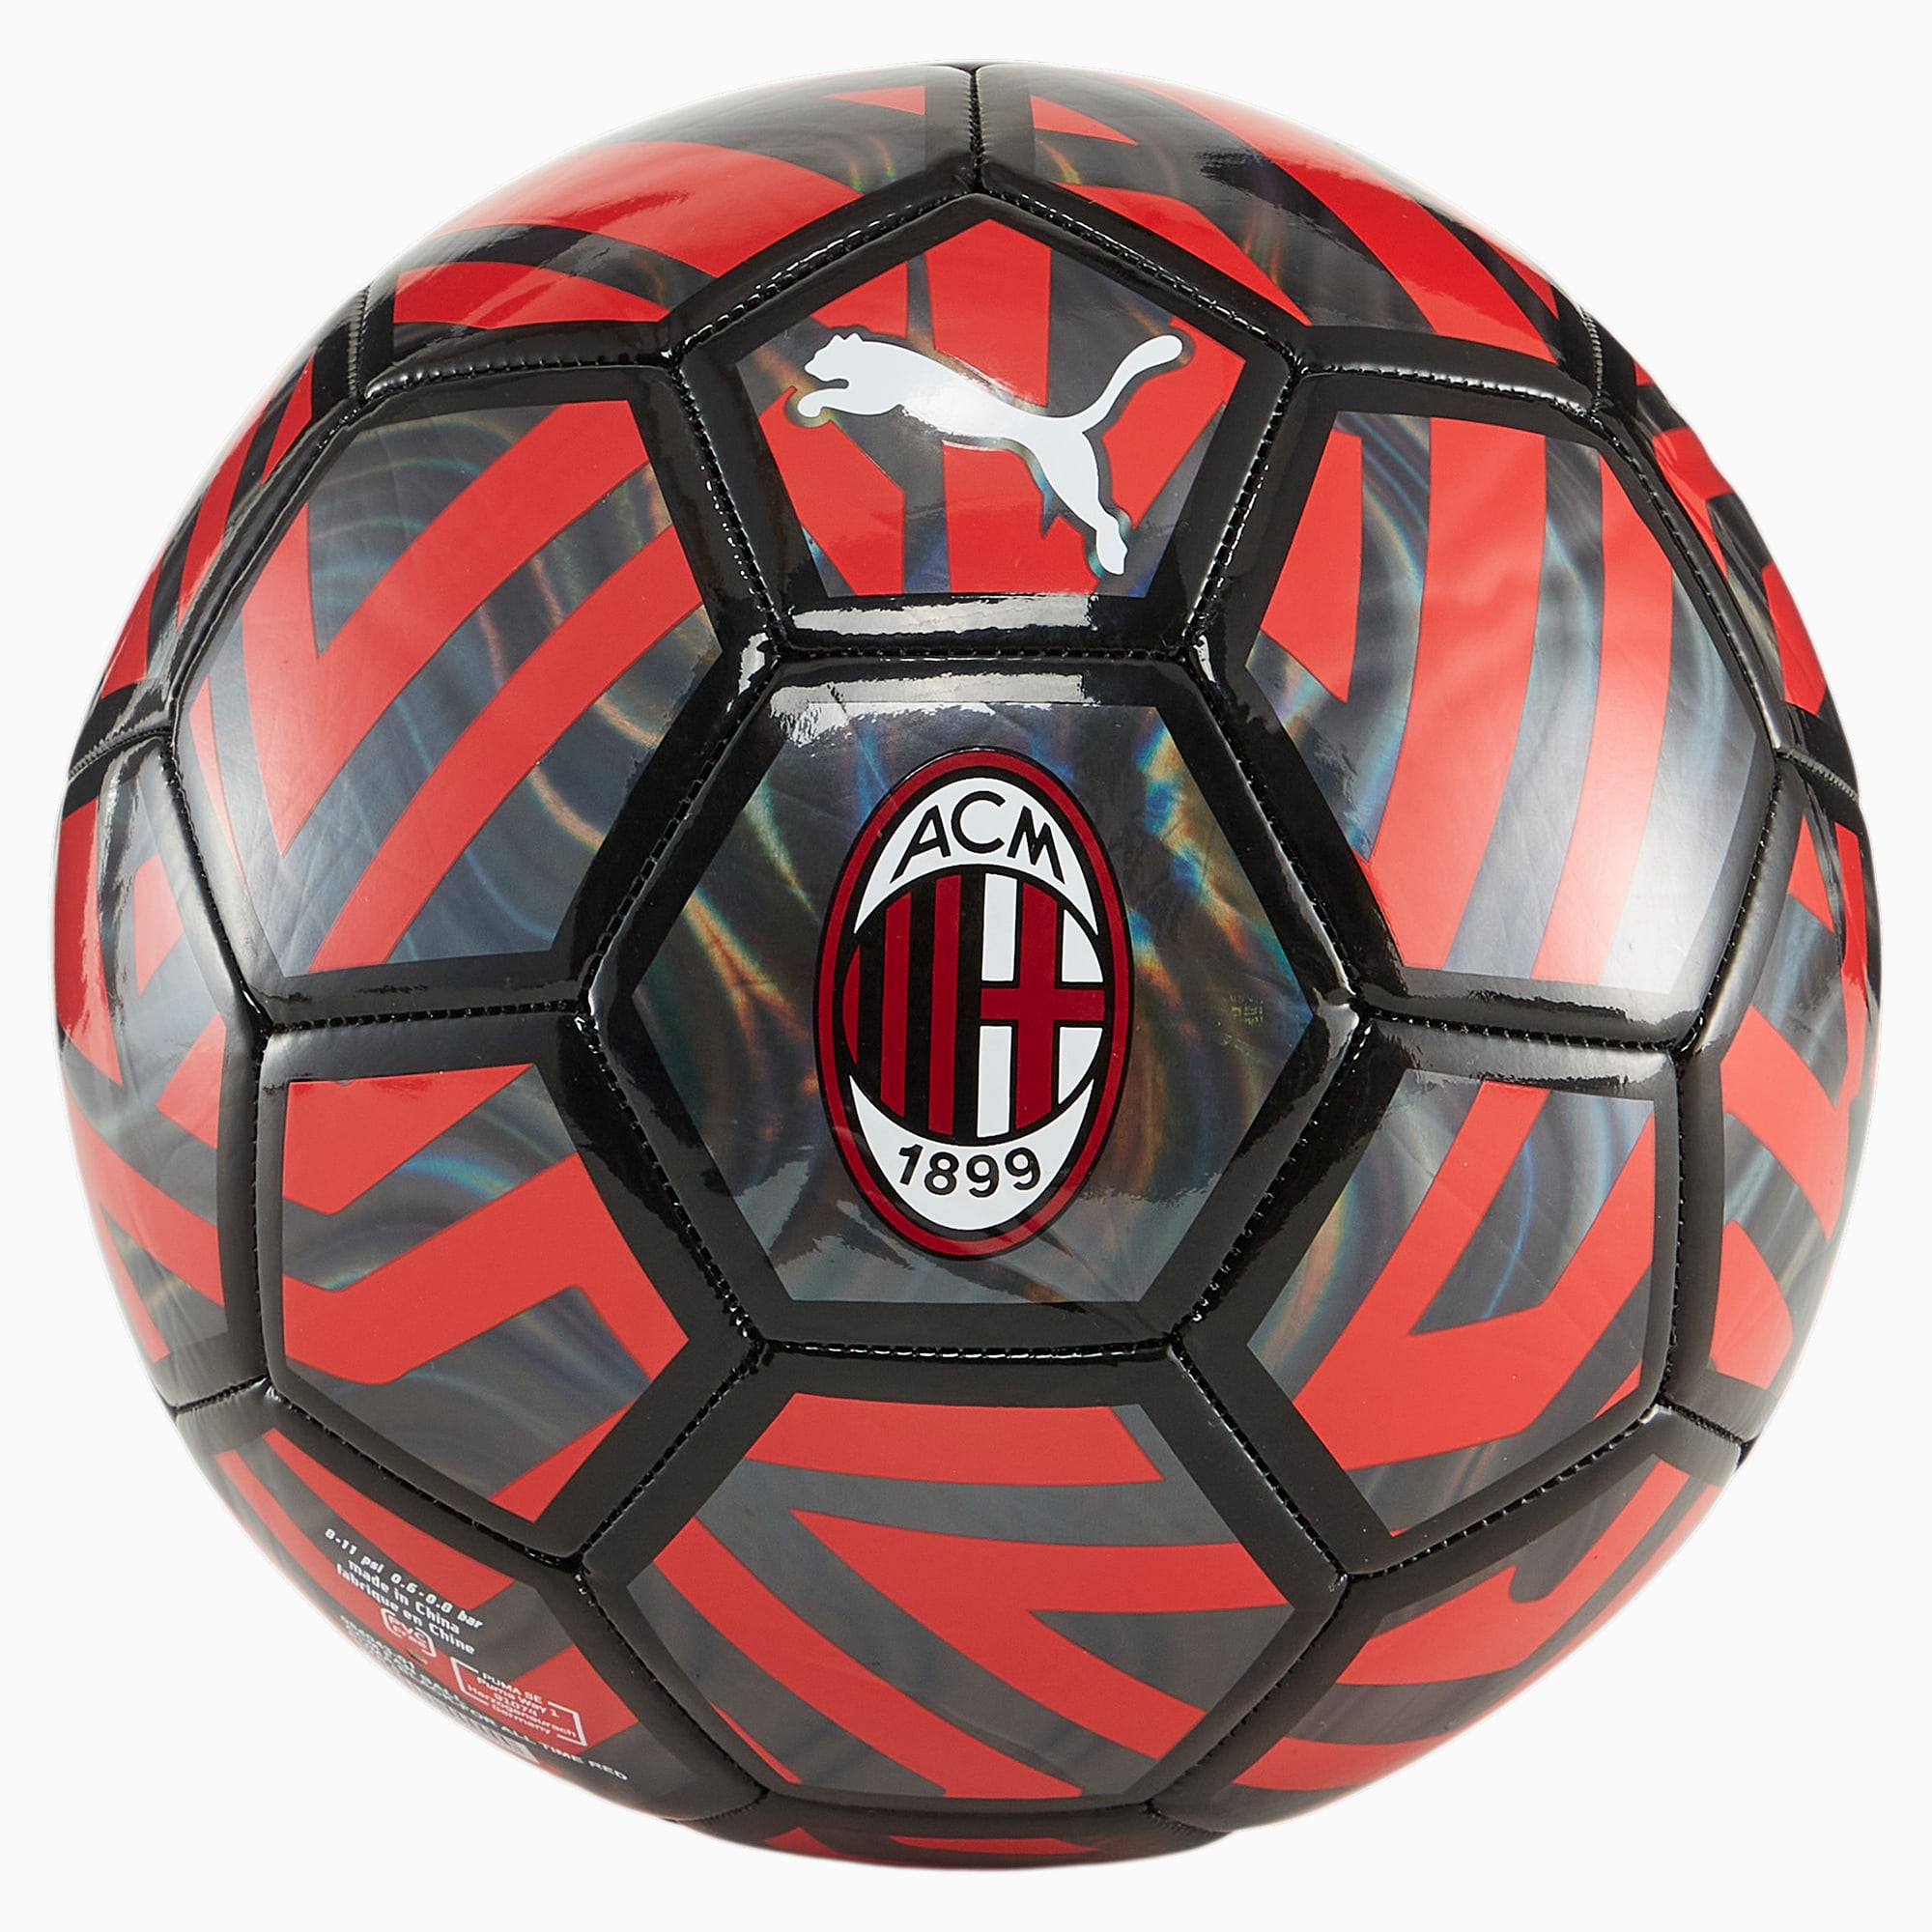 PUMA AC Milan Fan-Fußball, Schwarz/Rot, Größe: 3, Accessoires